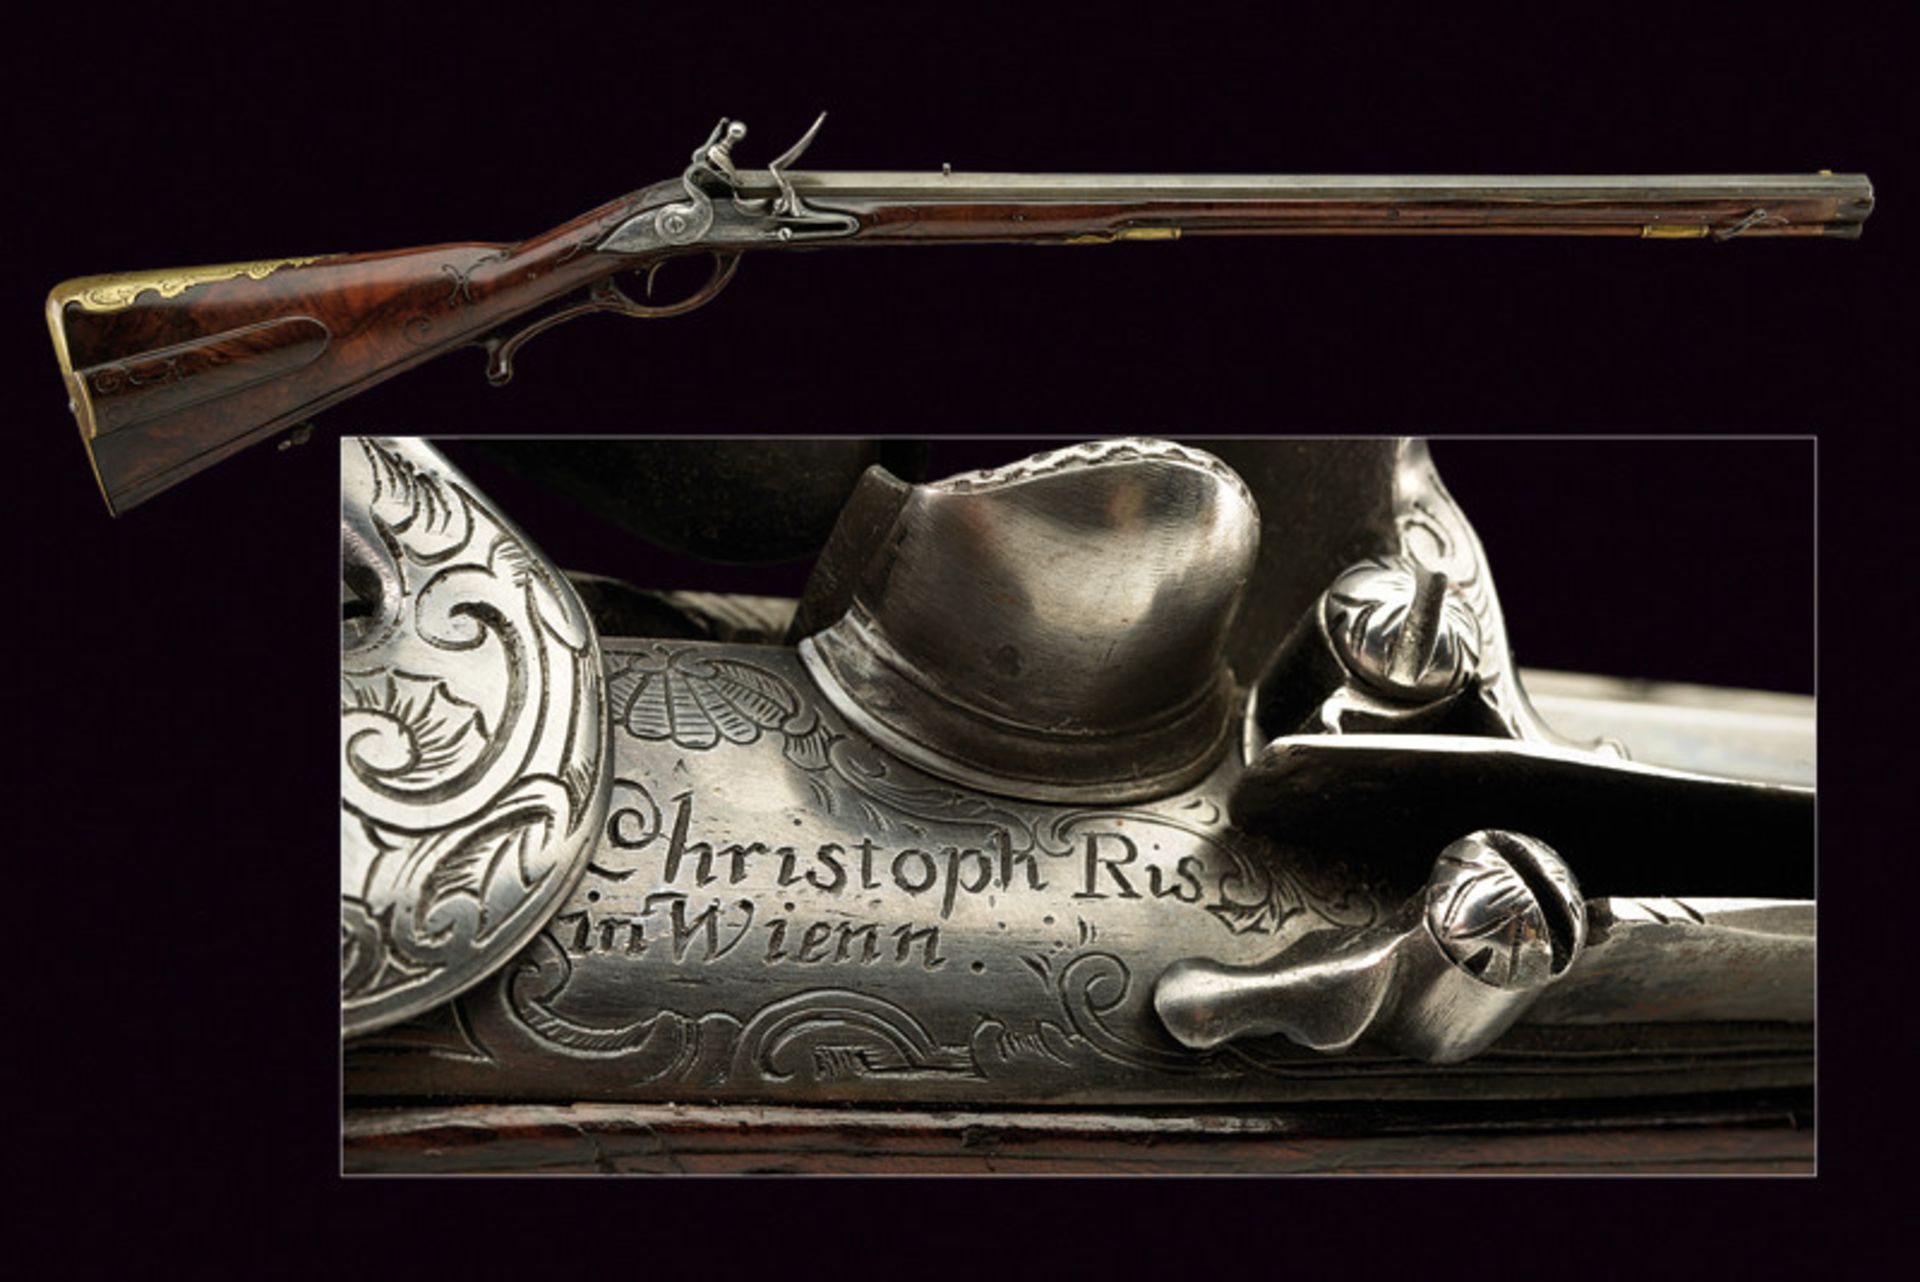 A flintlock rifle by Ris